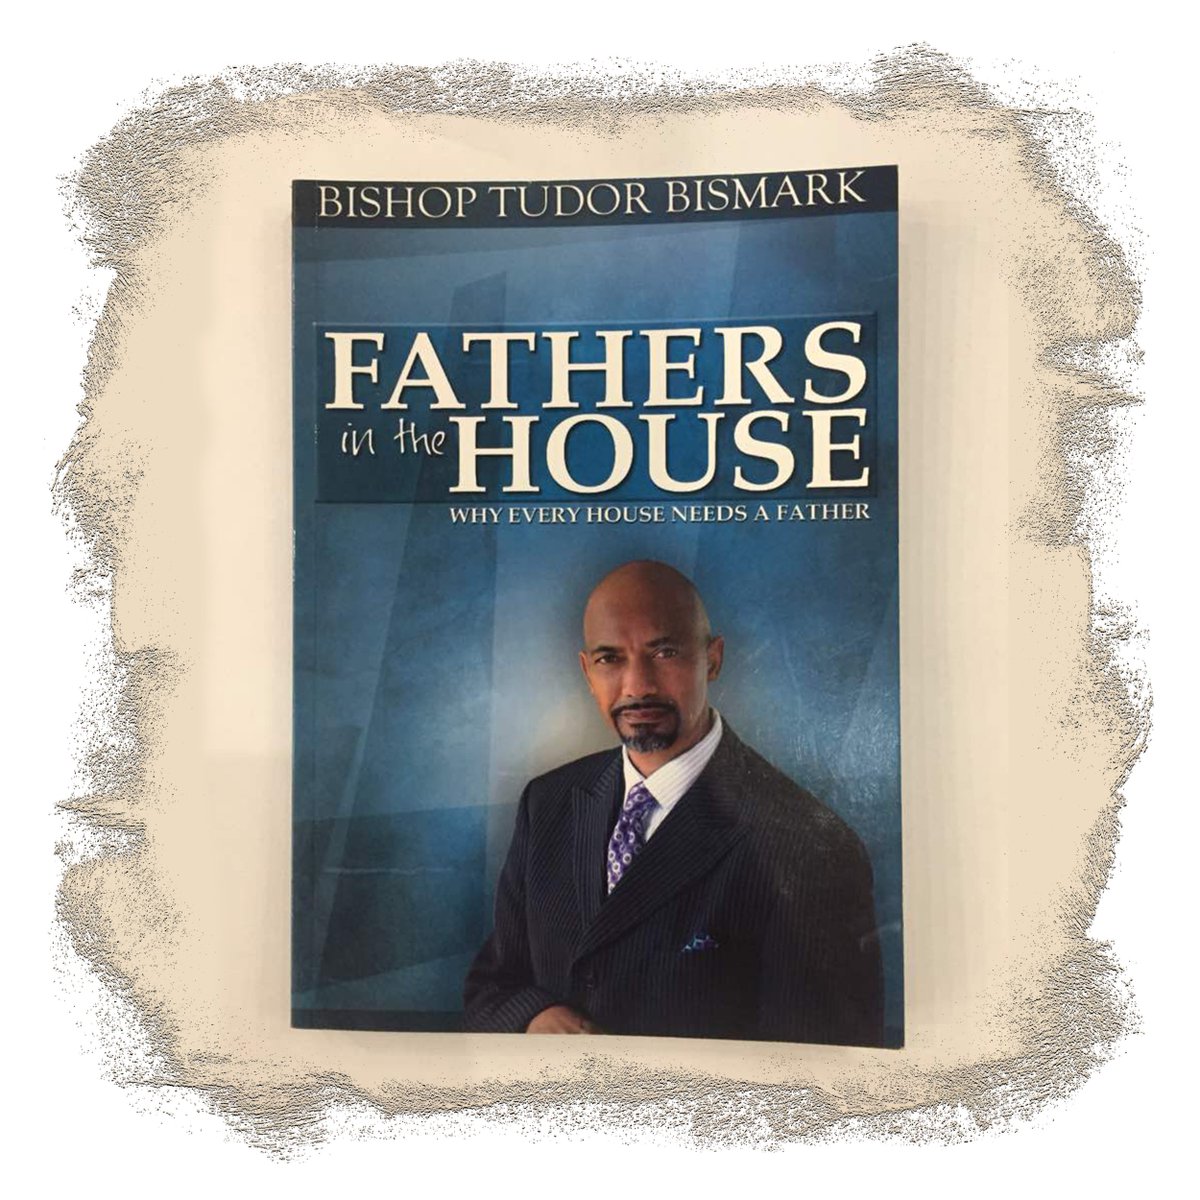 Available @wordwideafrica is #FathersInTheHouse book by Bishop @TudorBismark. Visit us or shop online at wordwideafrica.com #newlifecovenantchurch #jabulanewlifeministry #JabulaNLCC #JabulaInCon2018 #MicahStampley #jonathanrubain #khayamthethwa #MinisterMikeM #MensaOtabil.